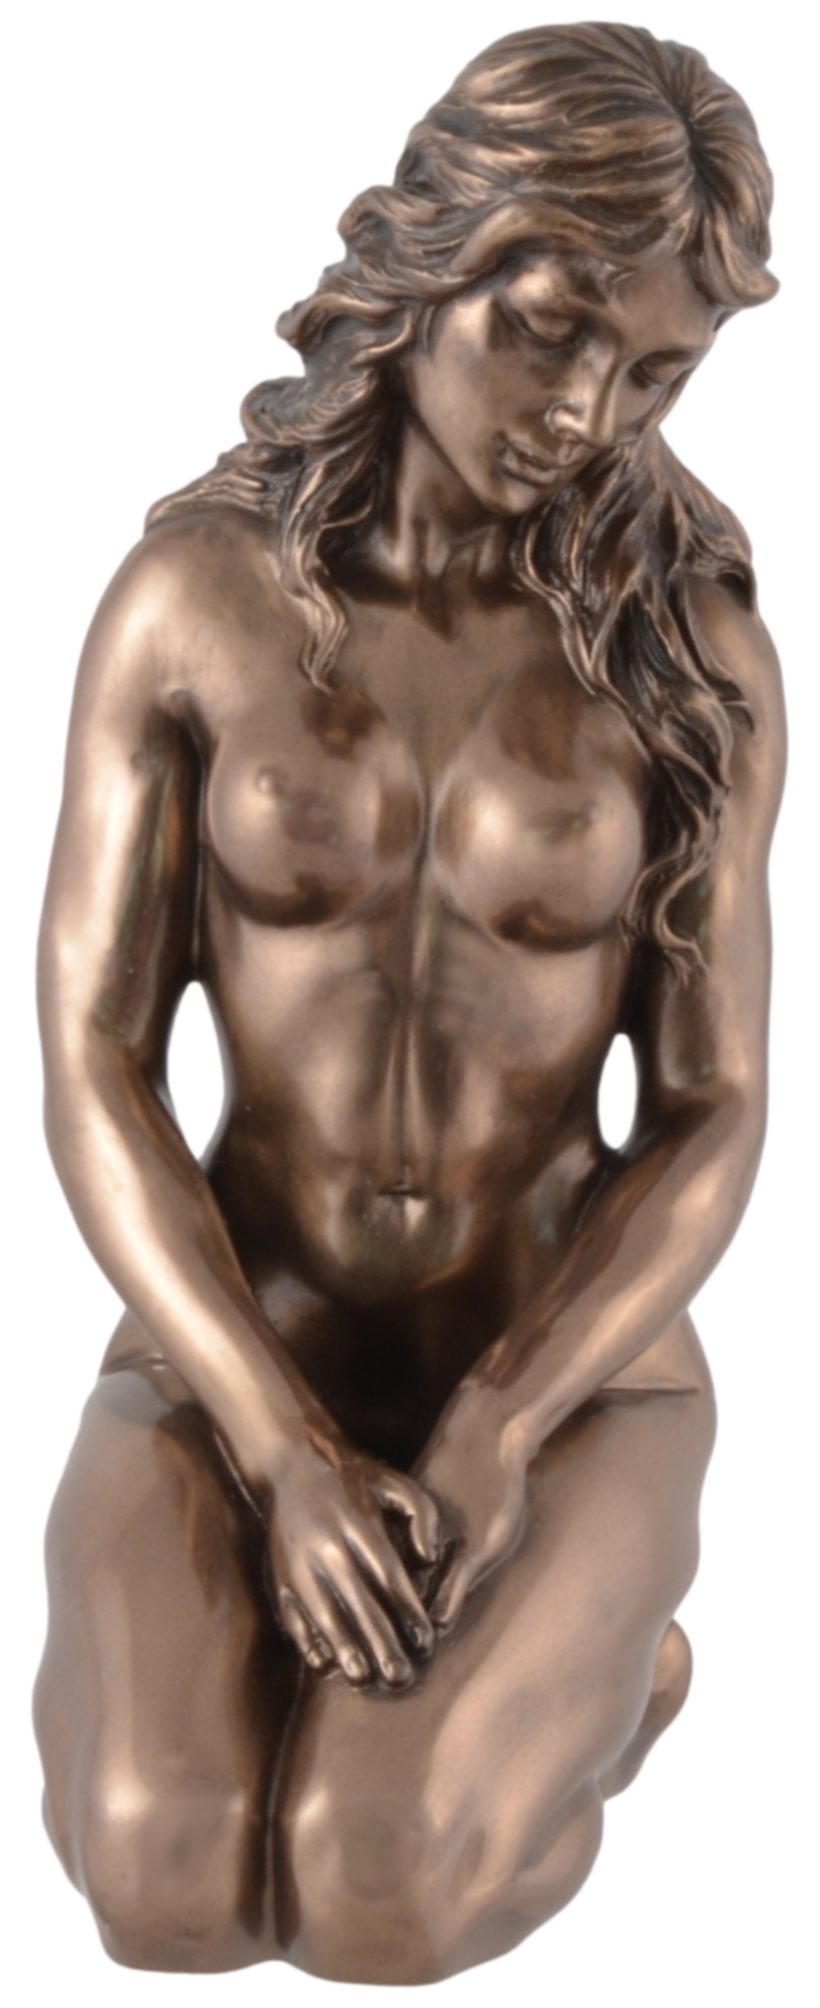 Dekofigur 10x6x15cm kniend direct ca. - Erwartung von bronziert, in Hand by LxBxH: Gmbh Nackte Frau Veronese, Vogler Akt Pose